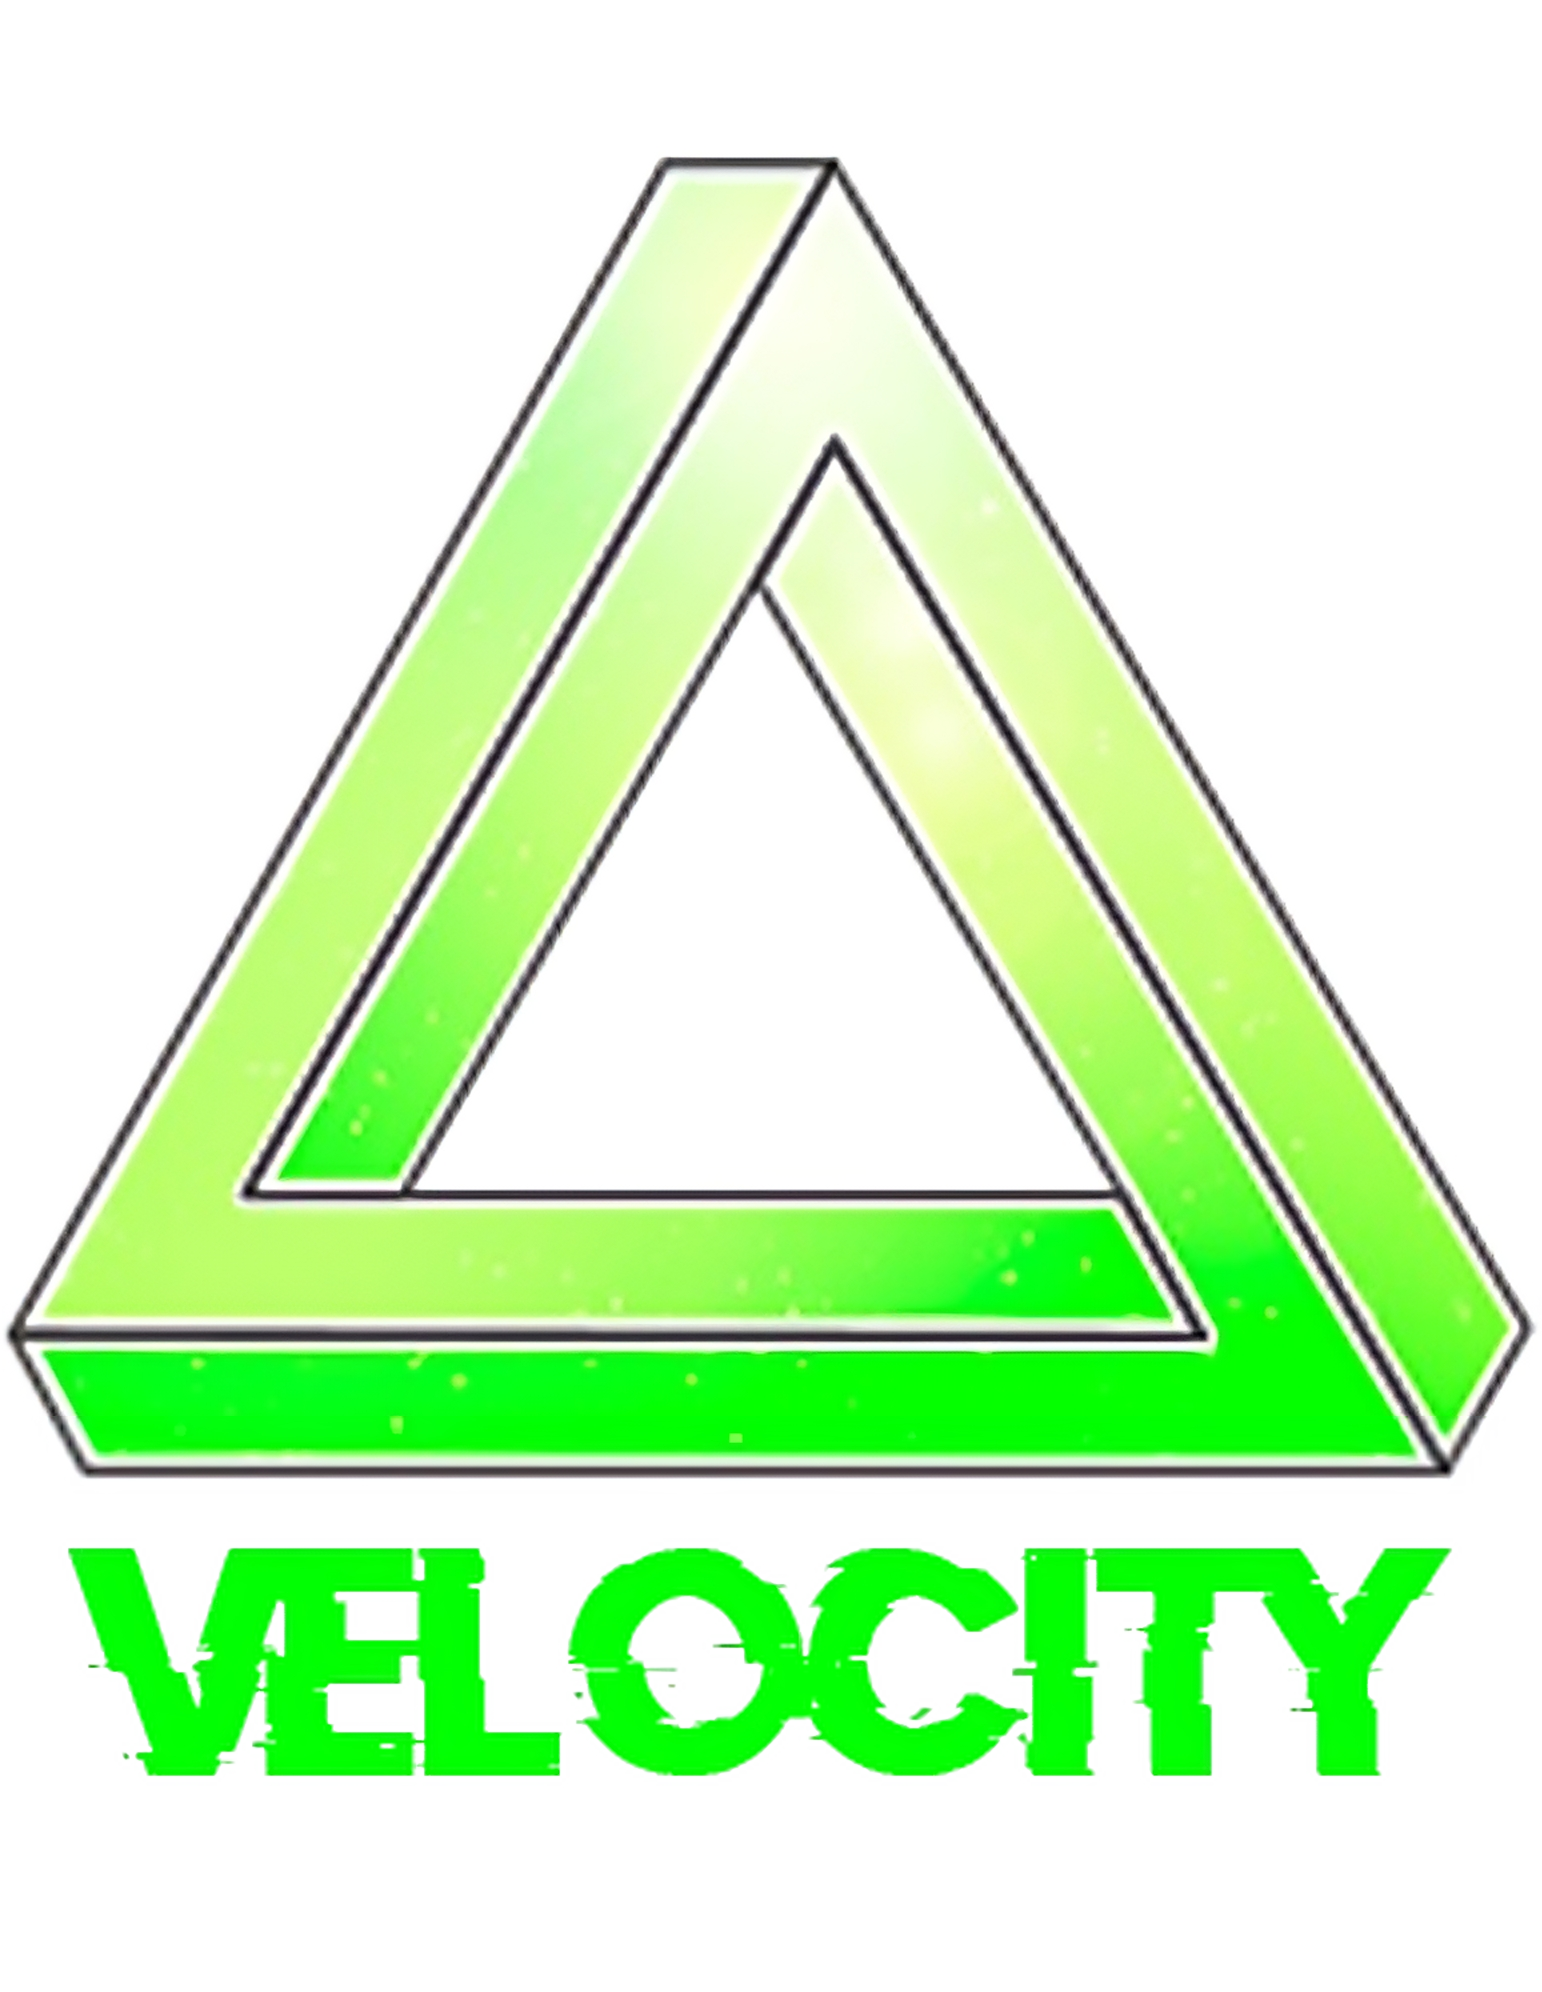 Velocity 